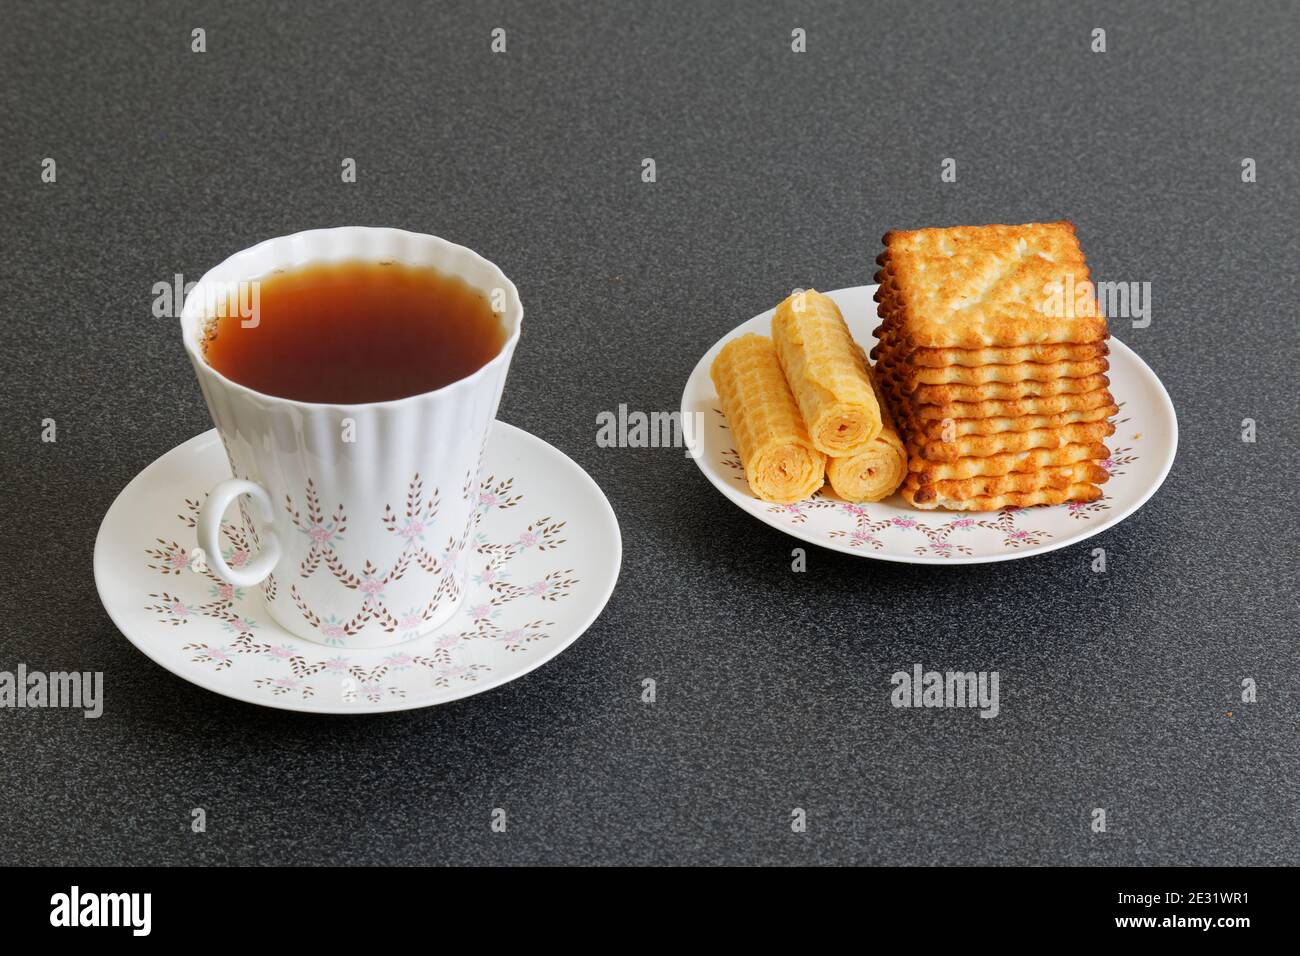 Kekse und eine Tasse porzellan-Tee auf dem dunklen Tisch Stockfoto